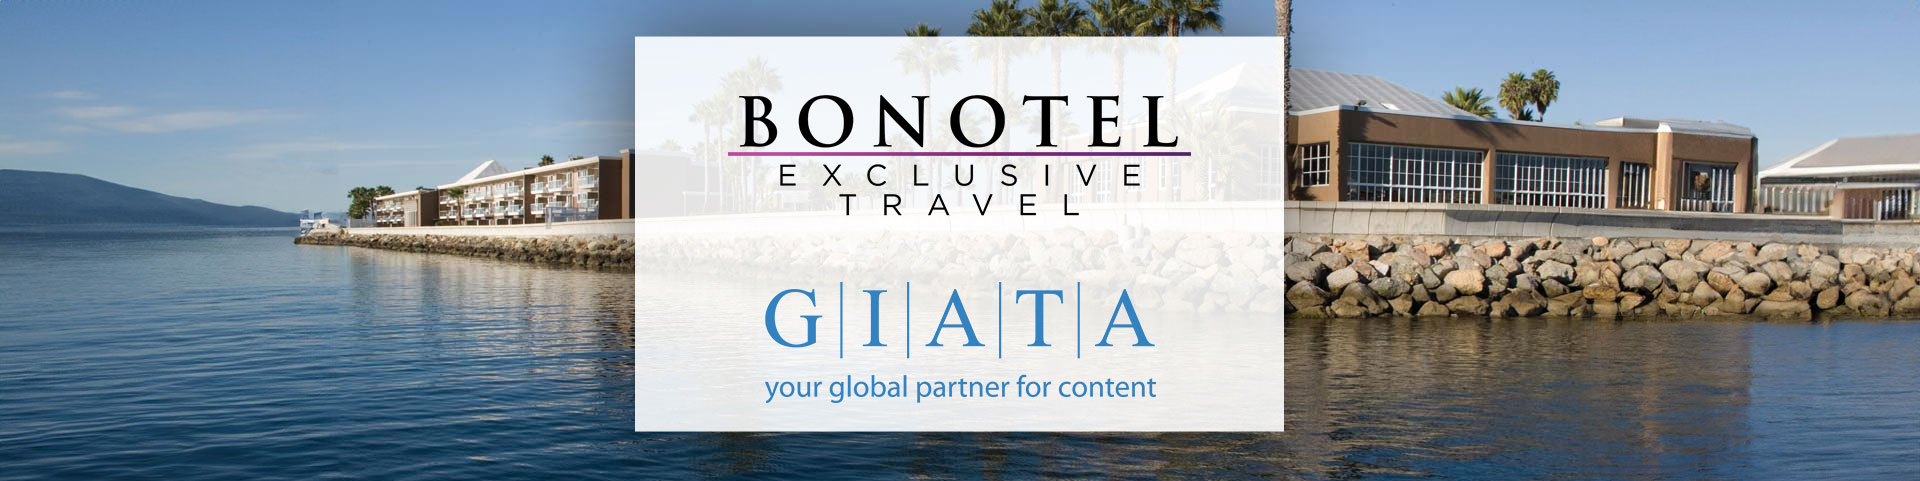 Bonotel-GIATA